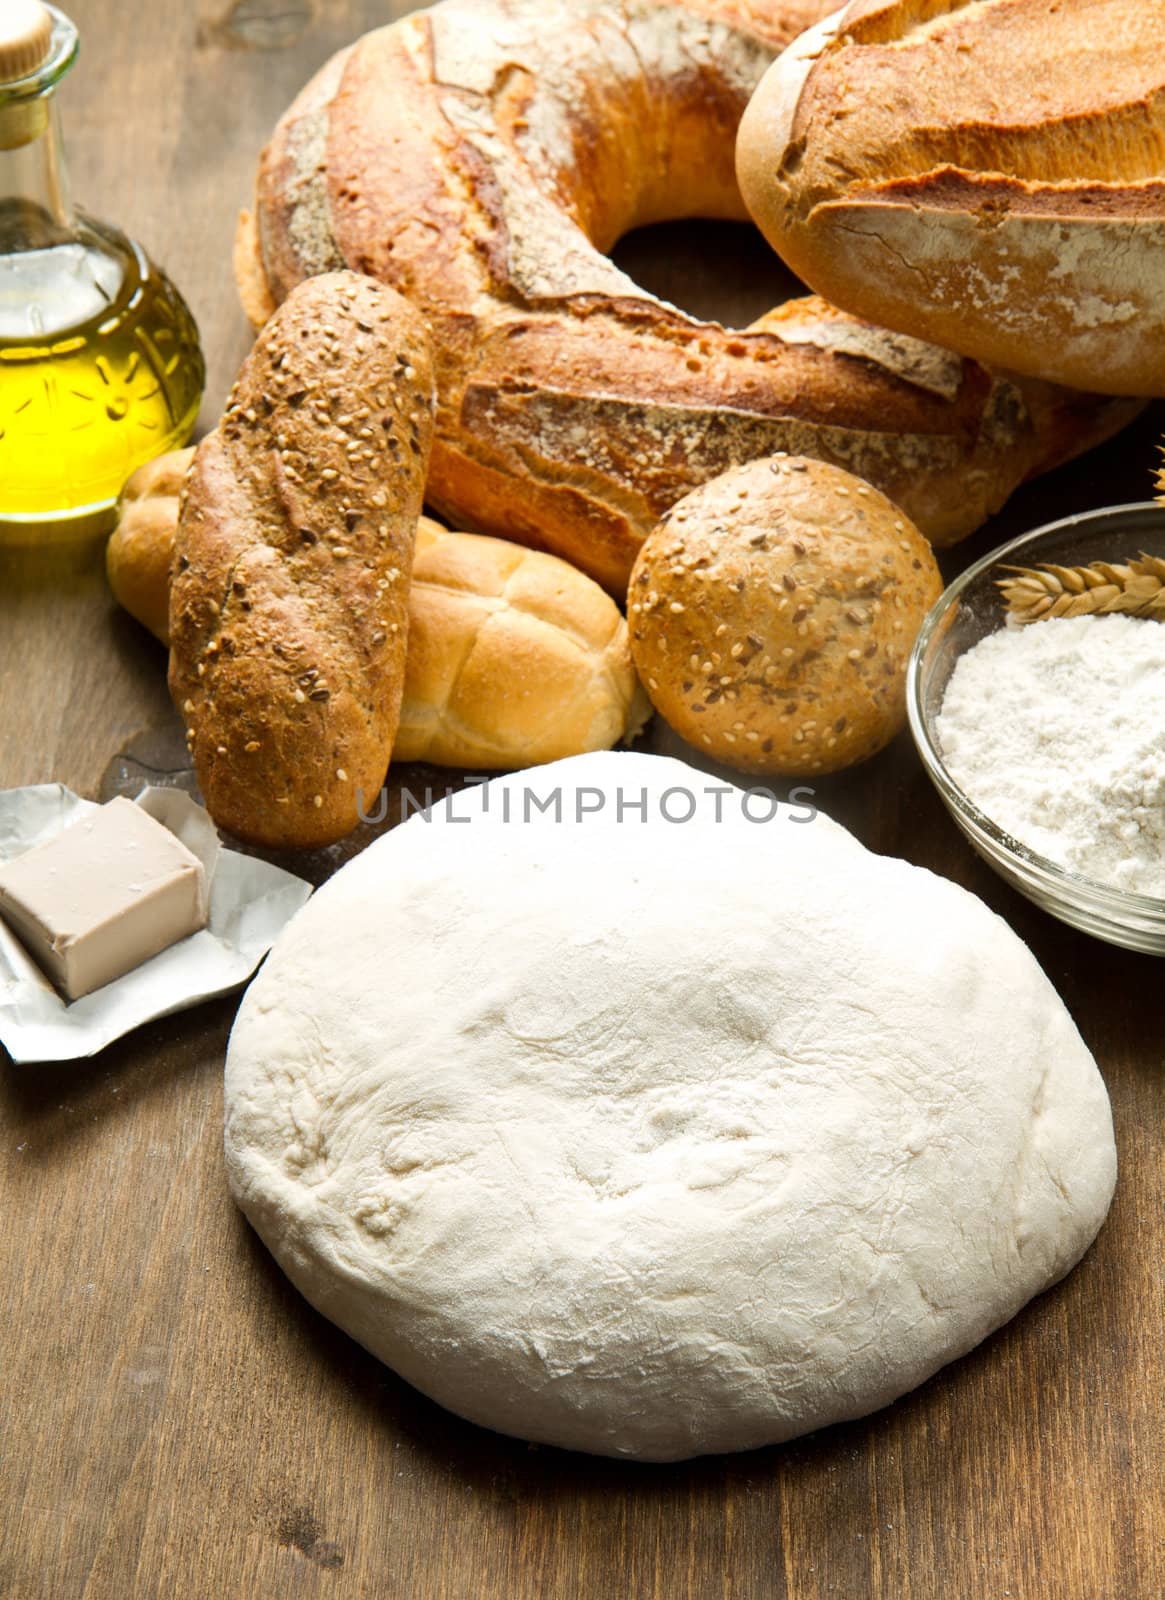  homemade bread  by lsantilli